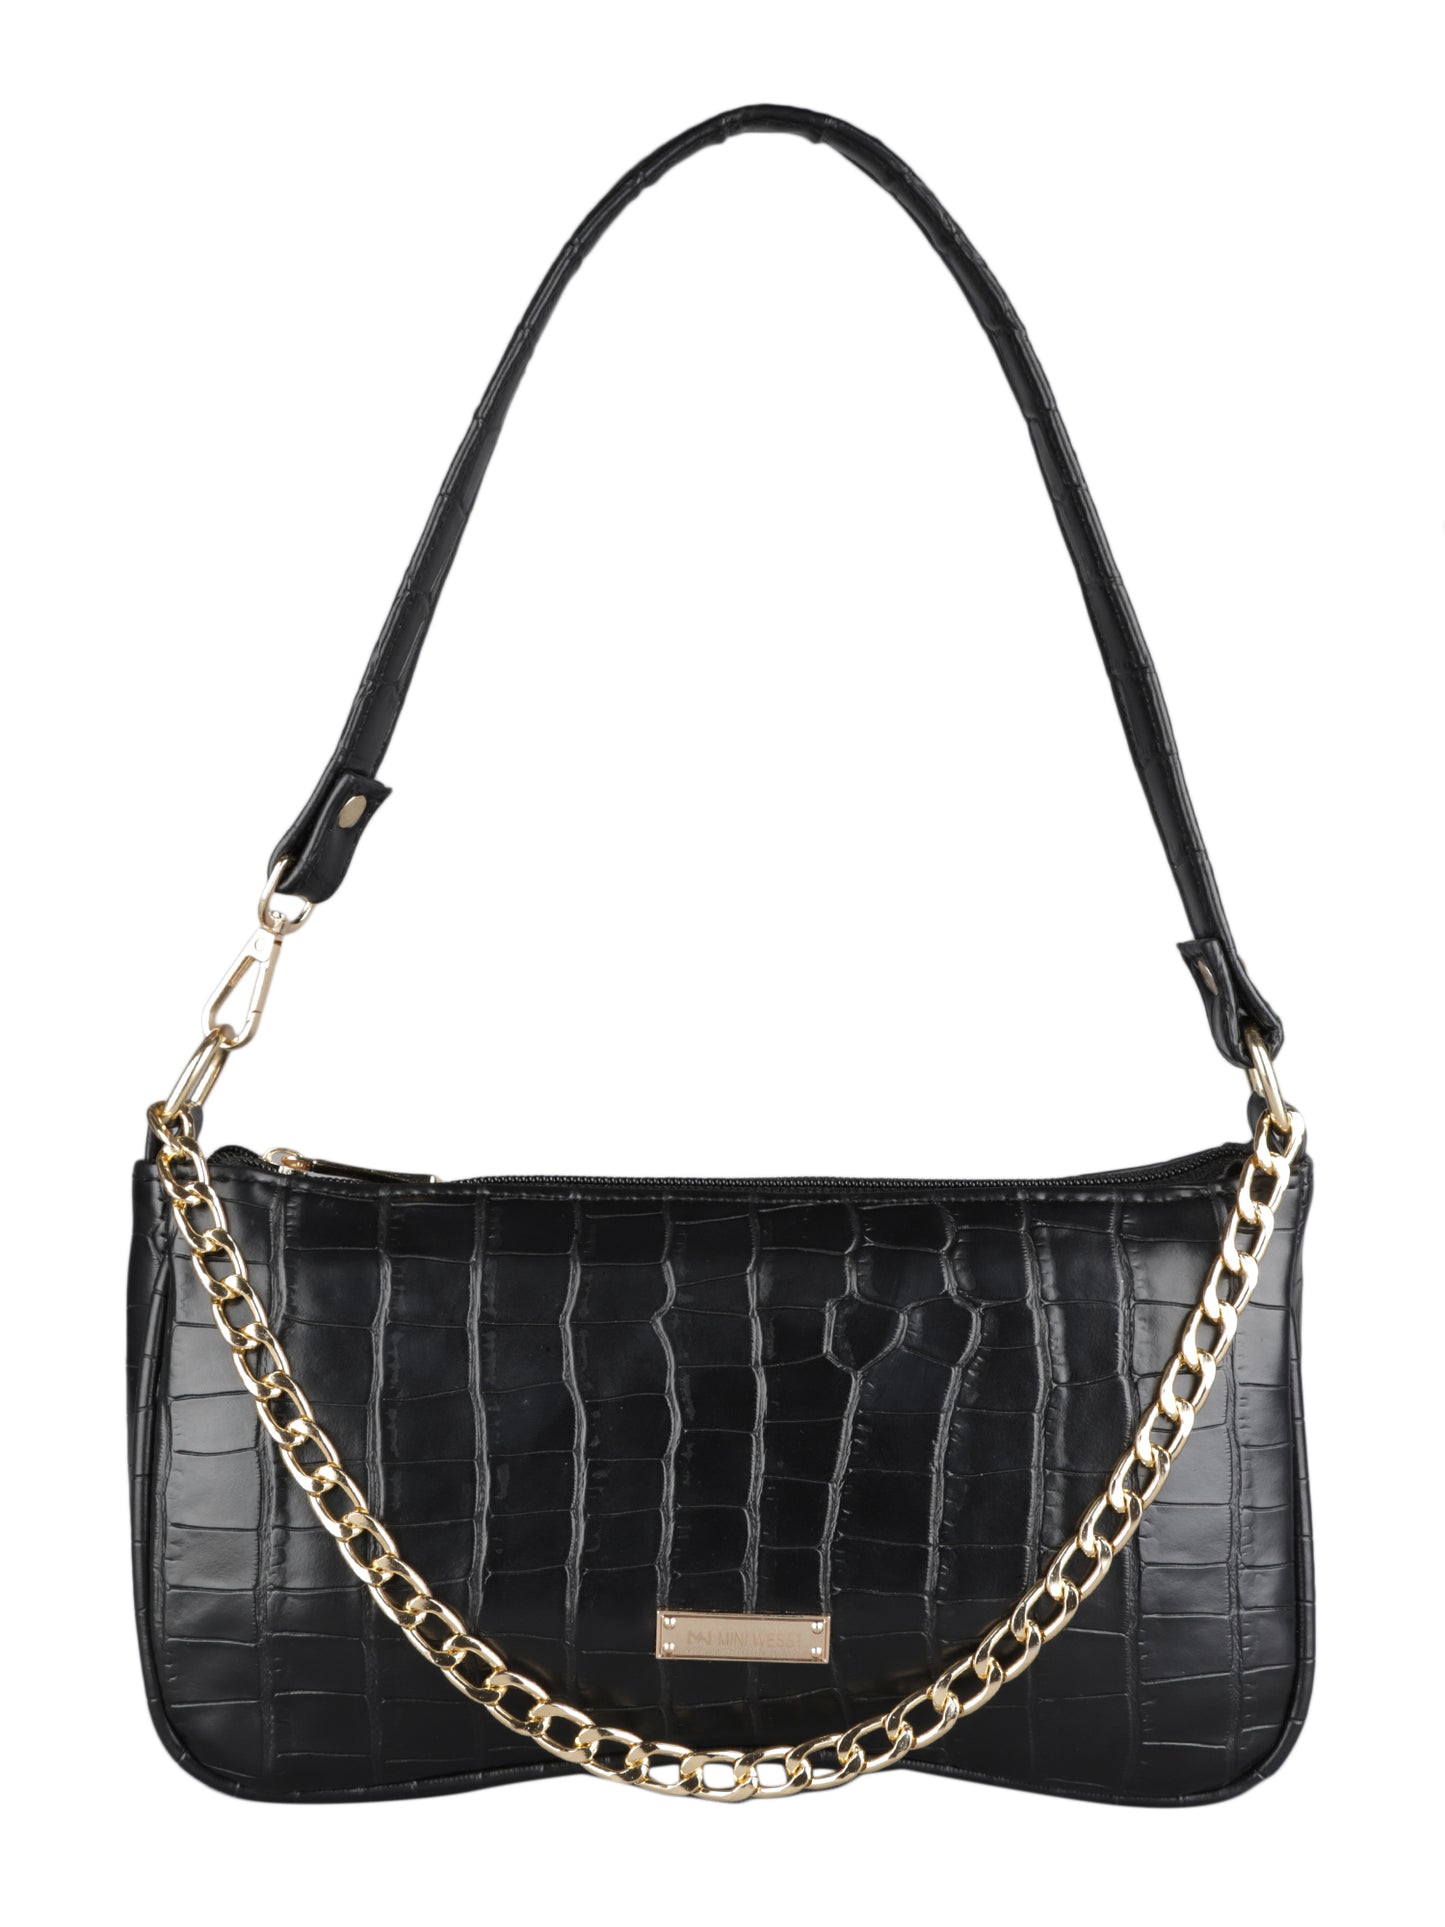 MINI WESST Women's Black  Handbag(MWSB0001BL)